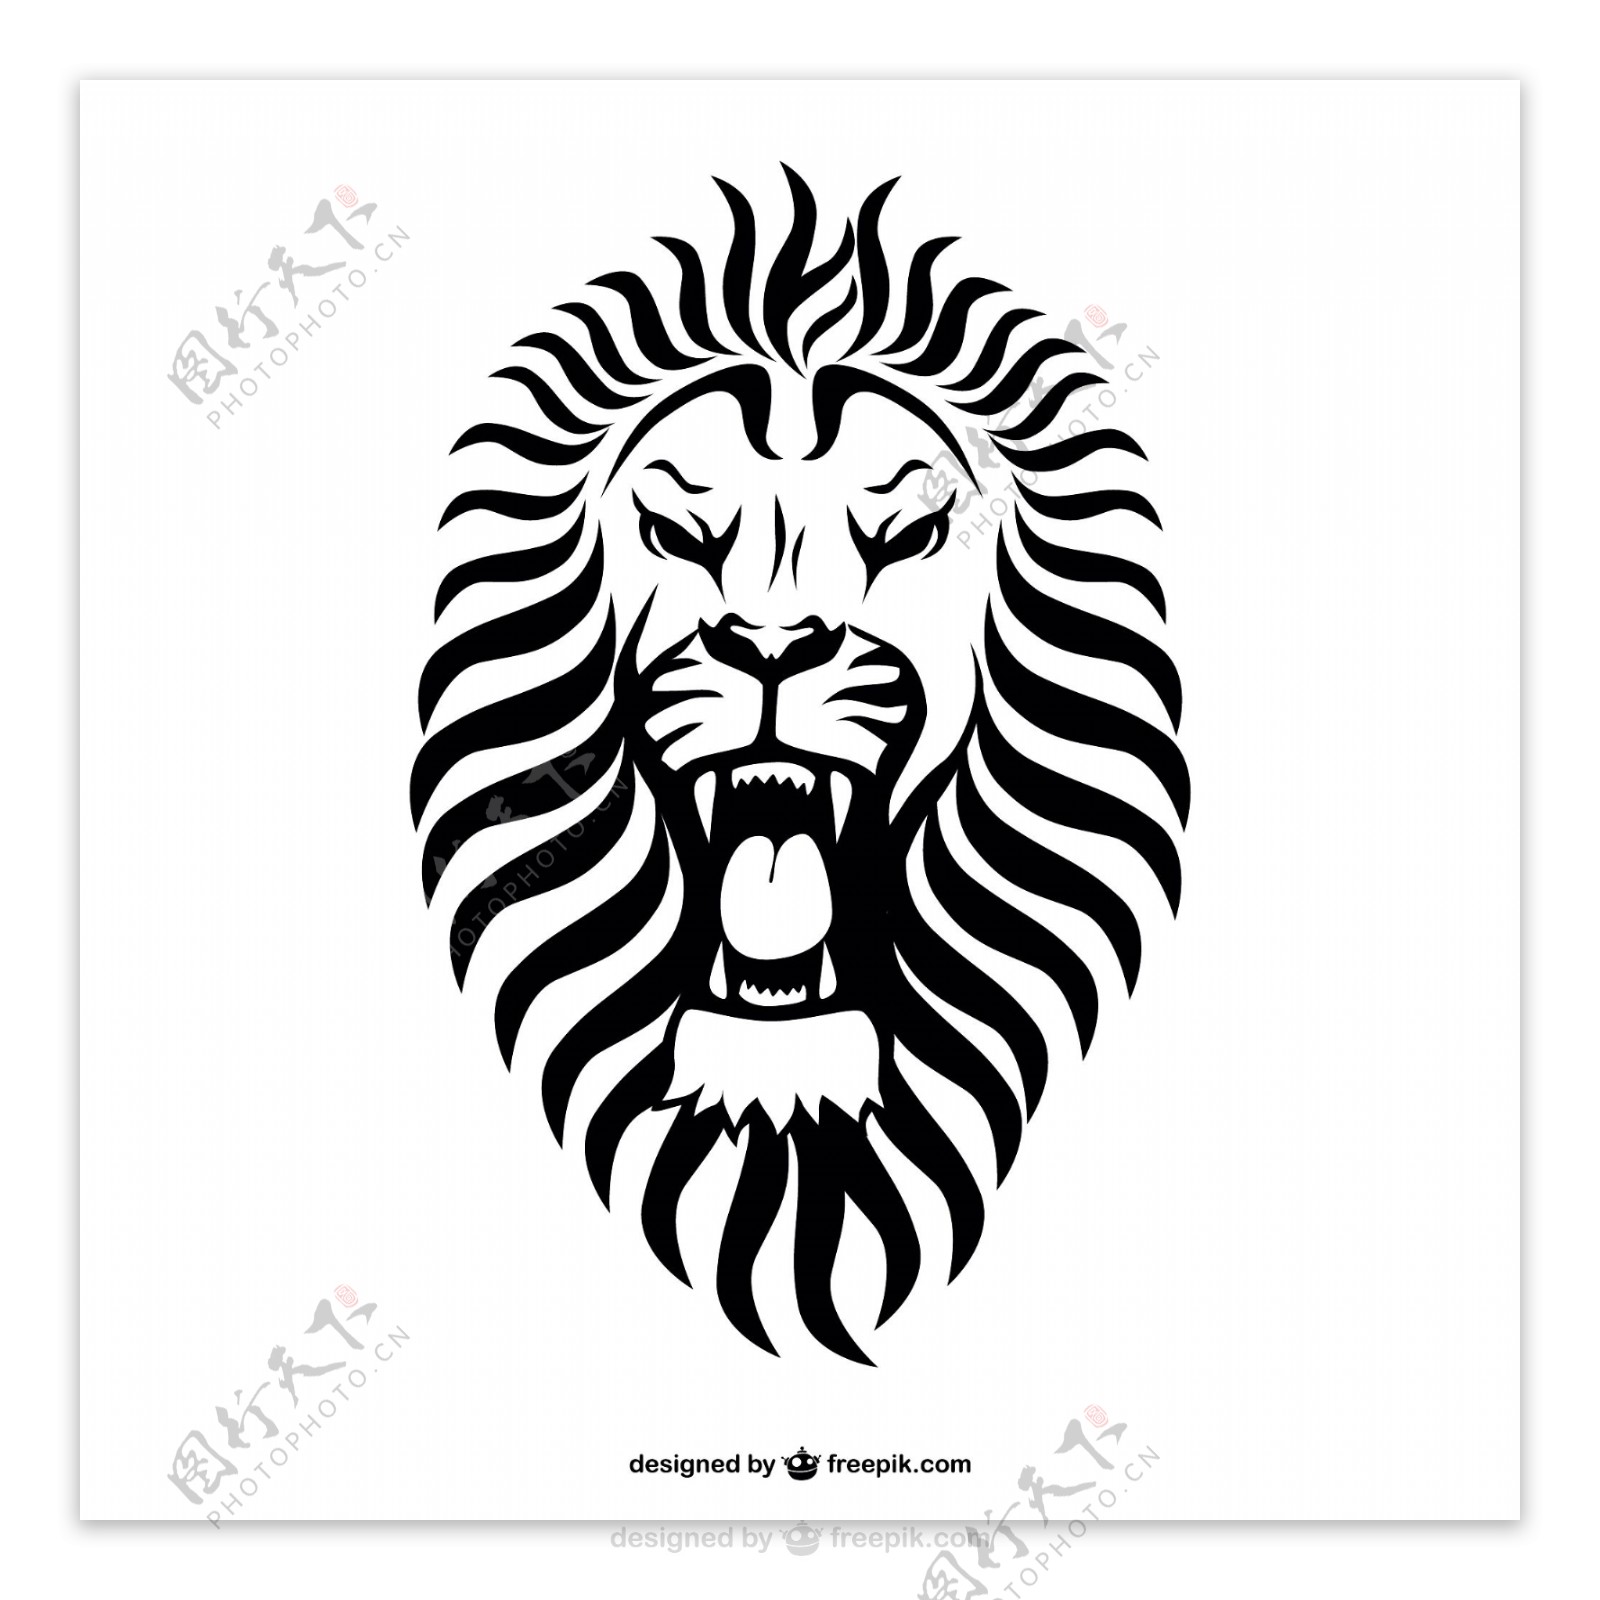 狮子部落纹身设计